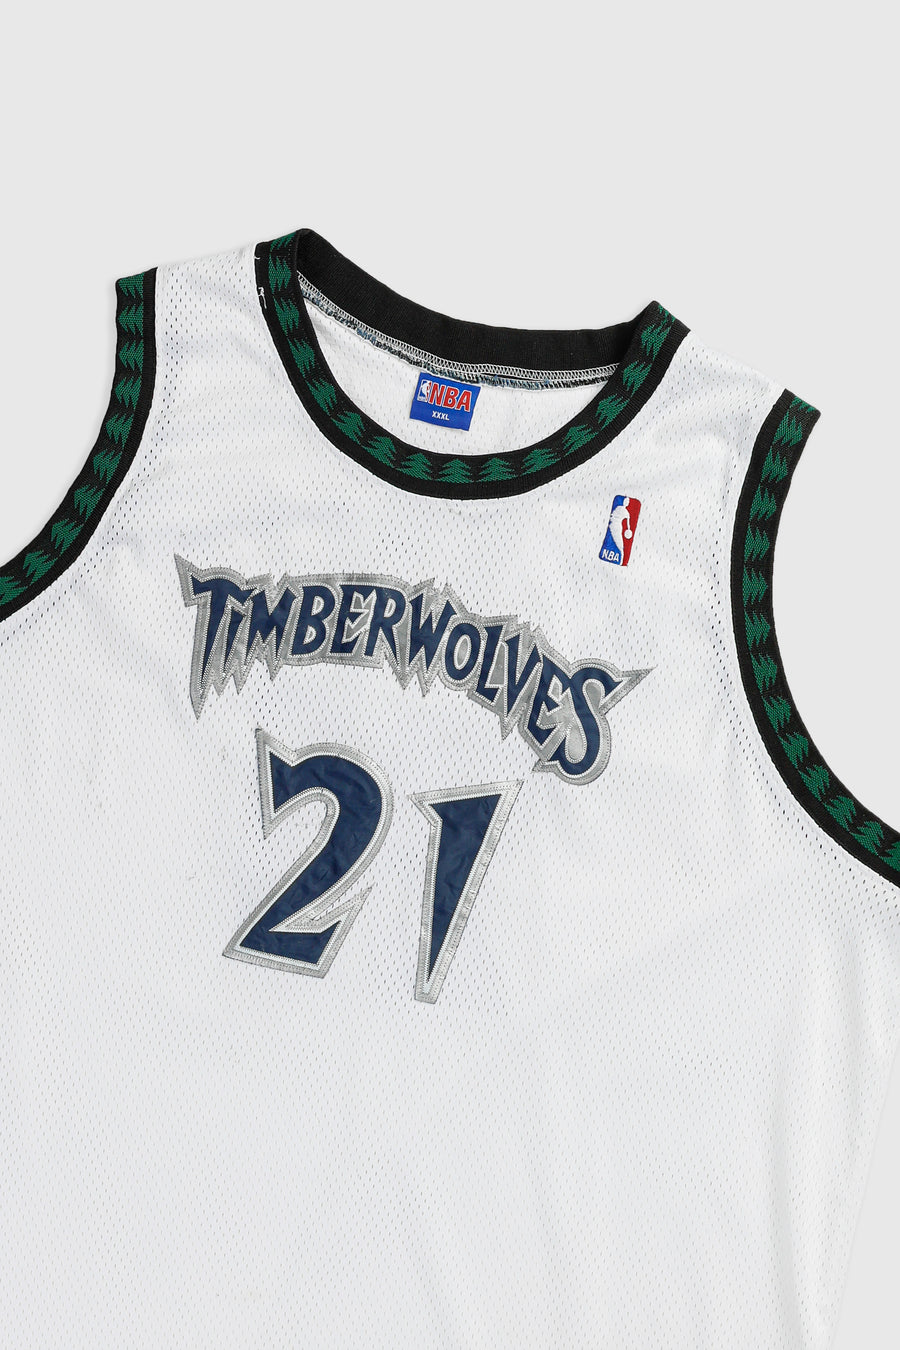 Vintage Minnesota Timberwolves NBA Jersey - XXXL